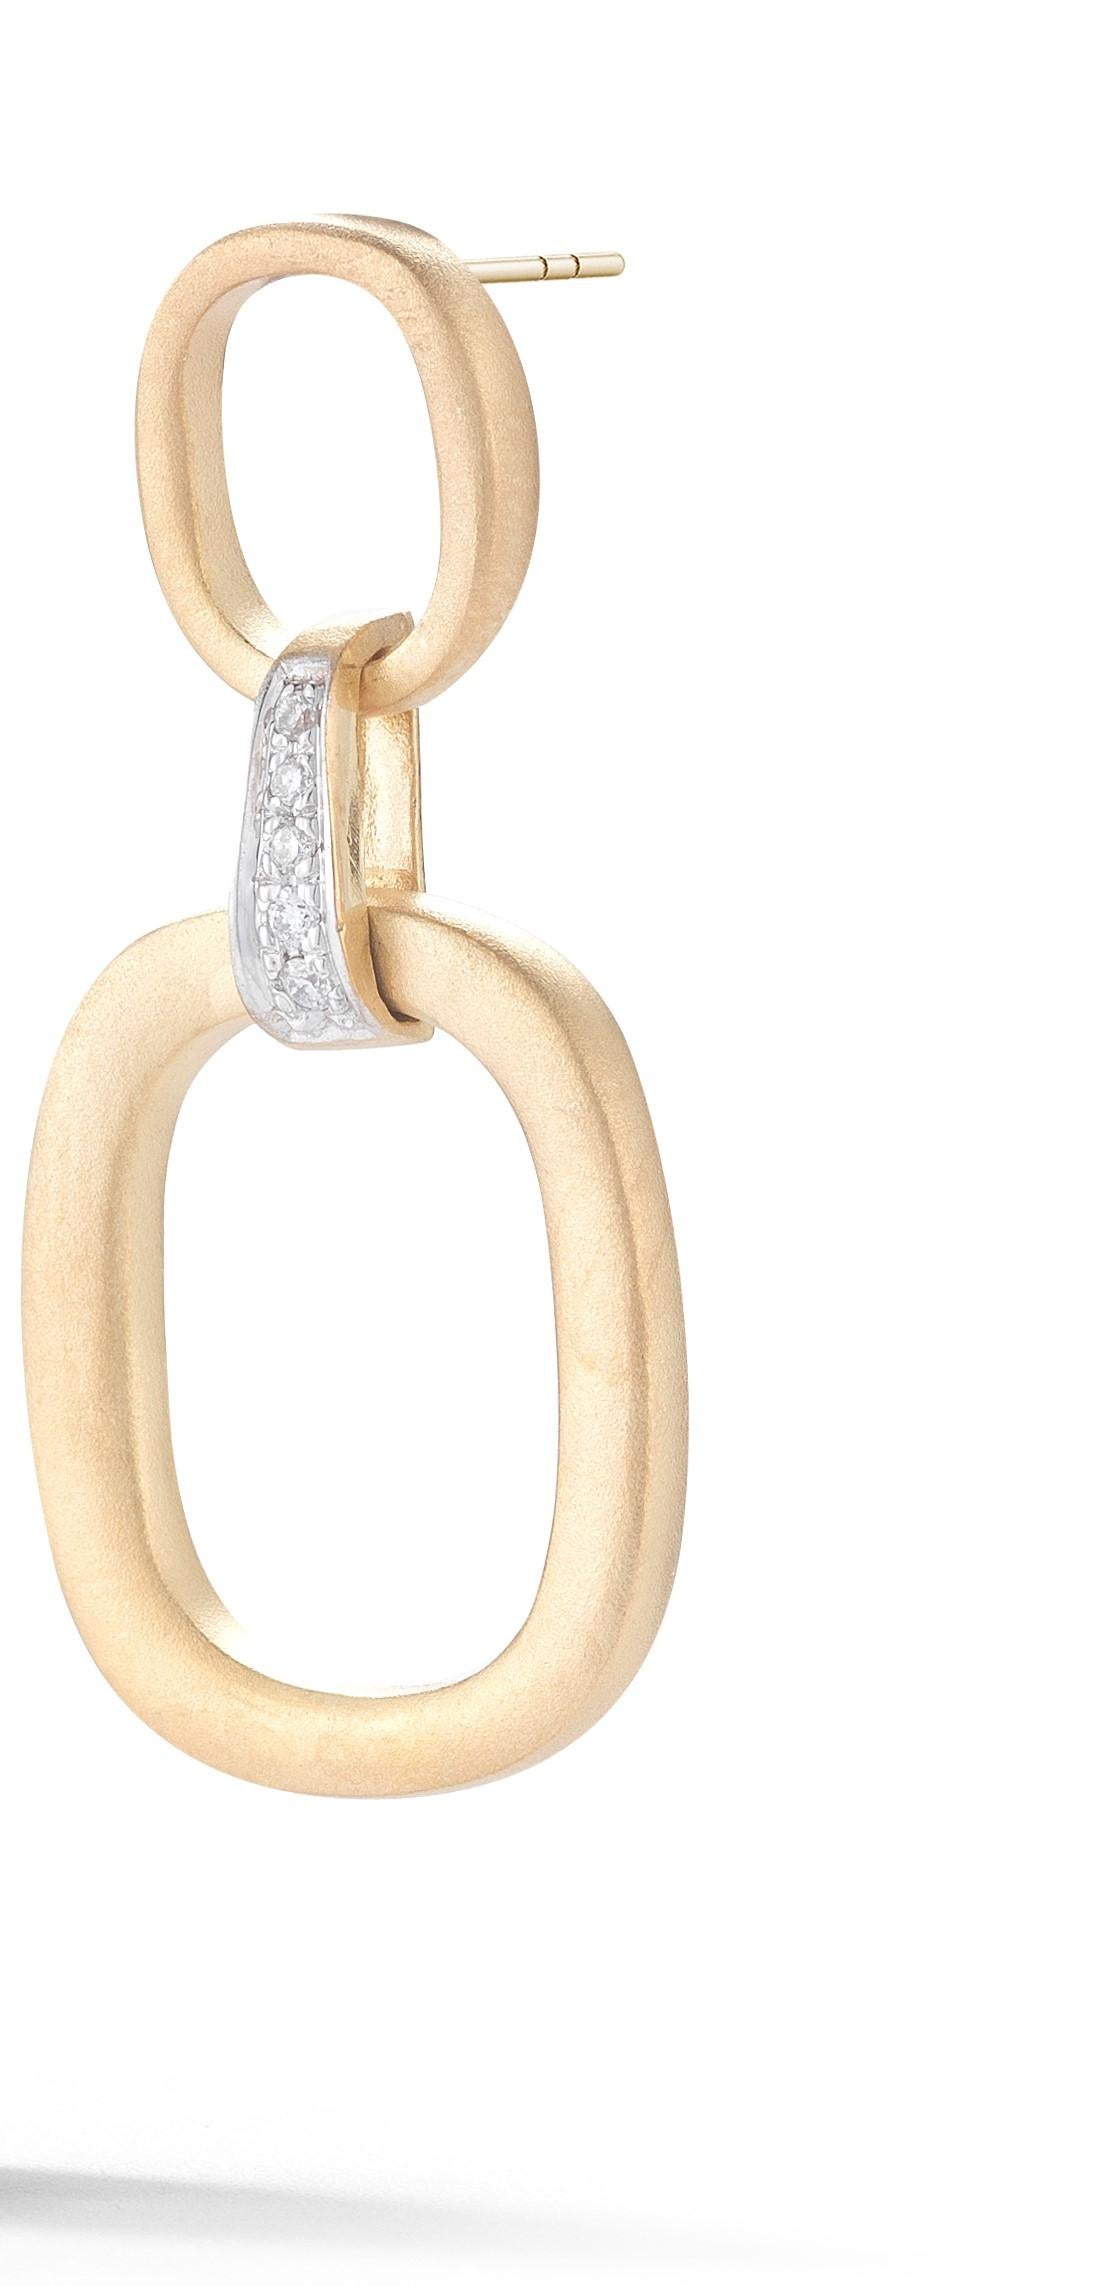 boucles d'oreilles pendantes en or jaune 14 carats, faites à la main, avec finition satinée et petits et grands diamants, serties de diamants de 0,10 carat sur une monture à friction.
